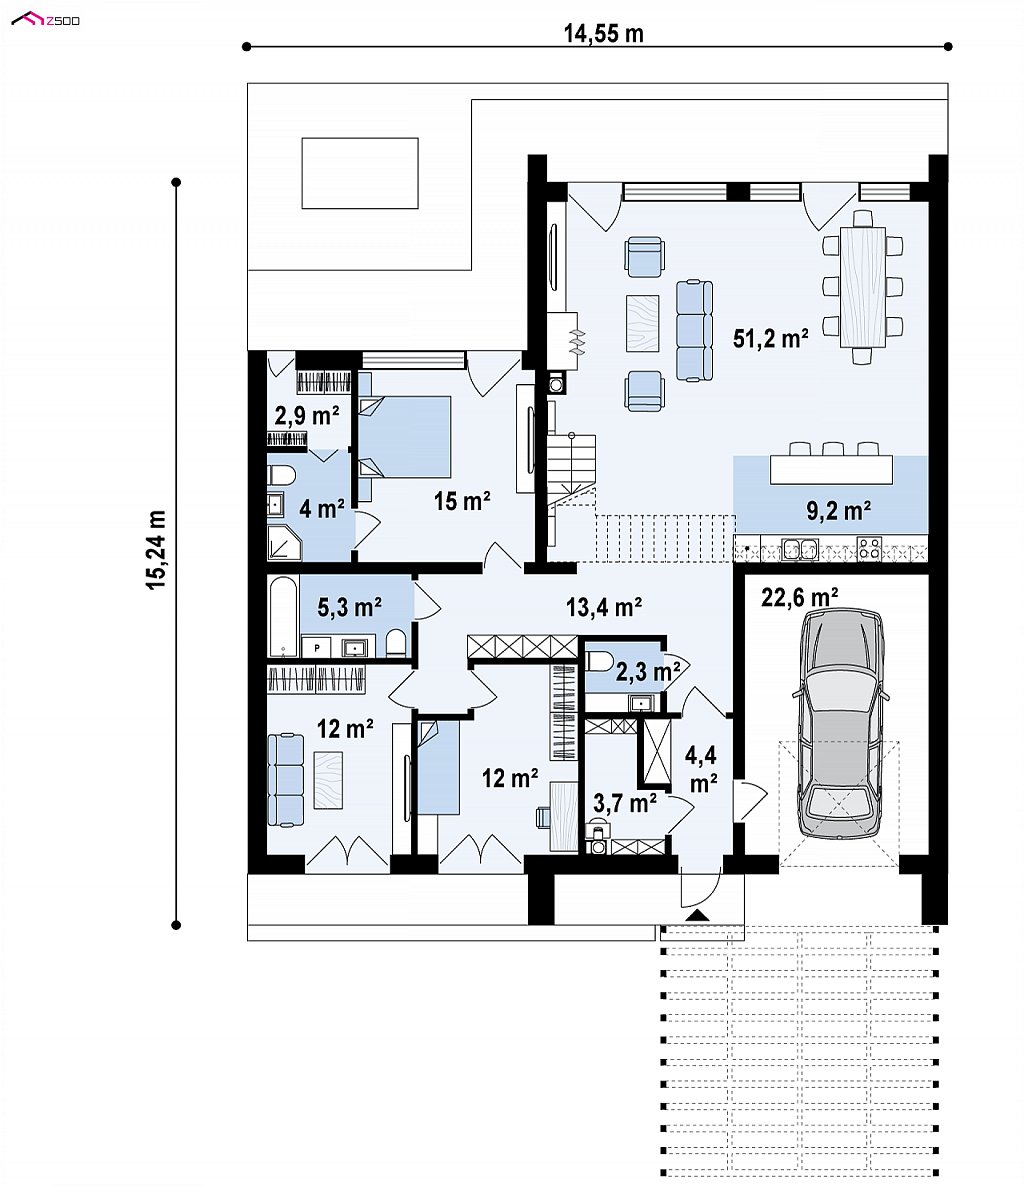 Cовременный проект дома с оригинальным экстерьером и грамотной функциональной планировкой план помещений 1